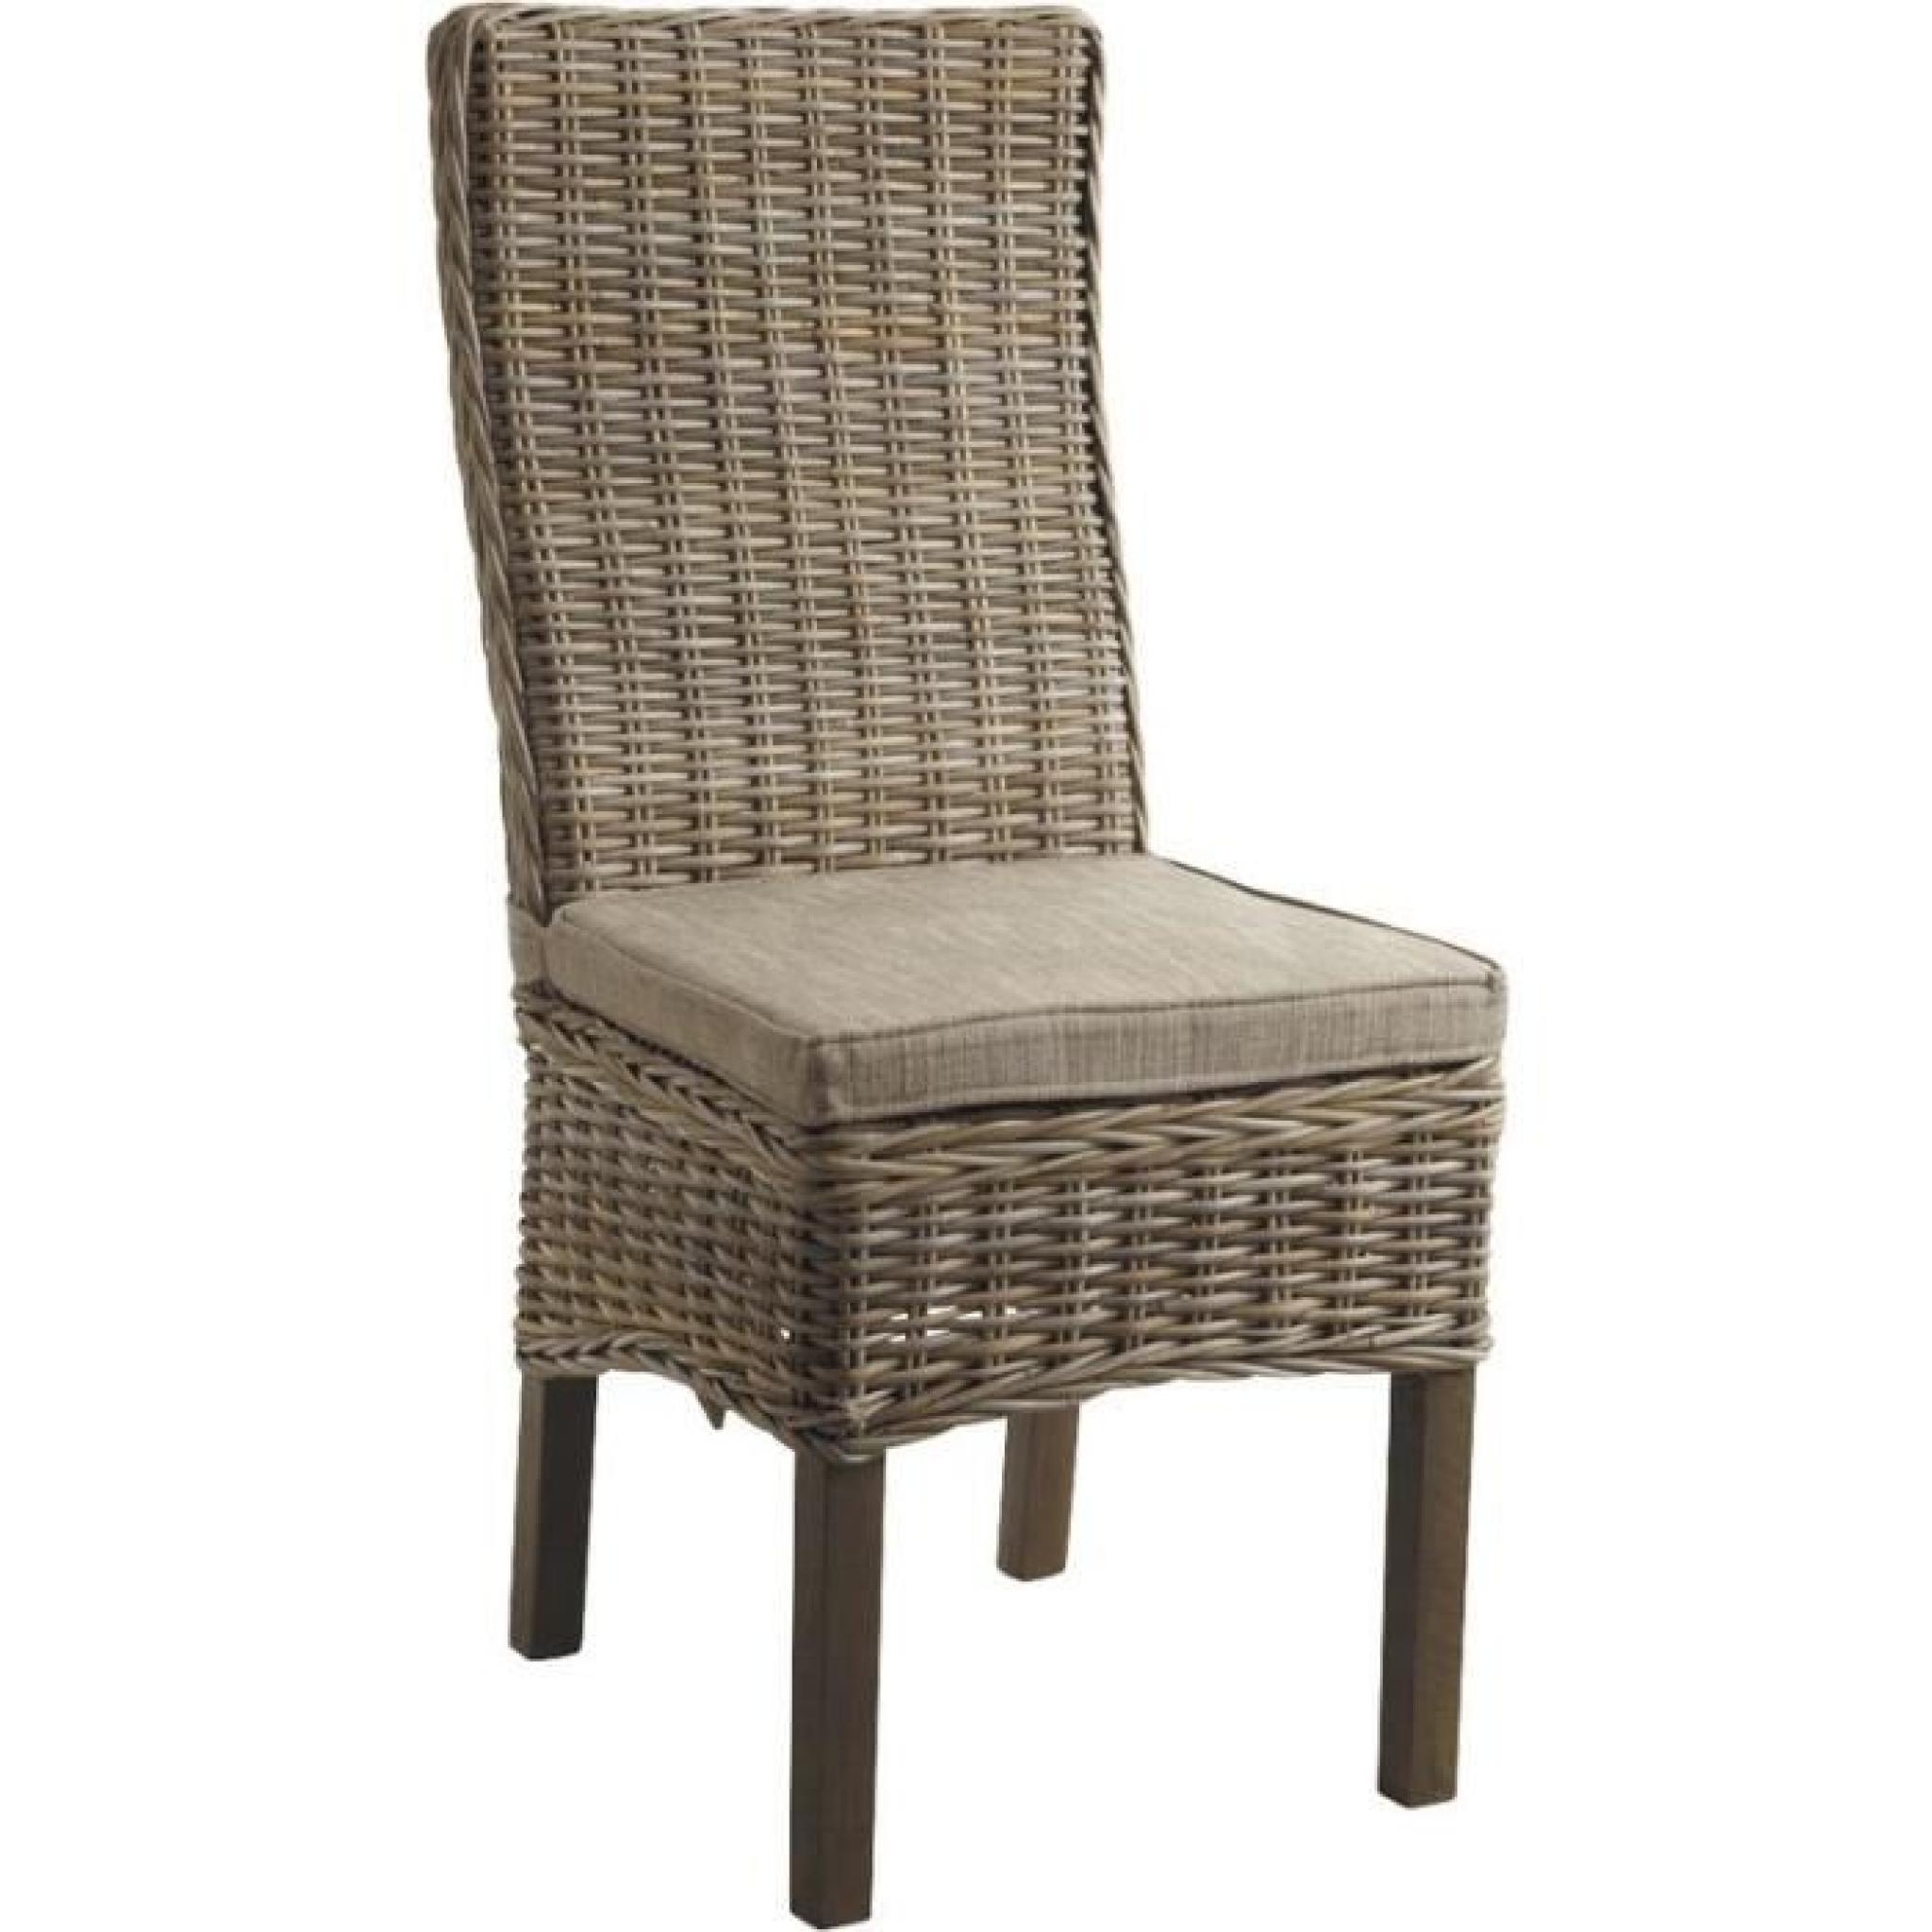 Chaise en poelet gris et manguier teinté, 48 x 62 x 105 cm